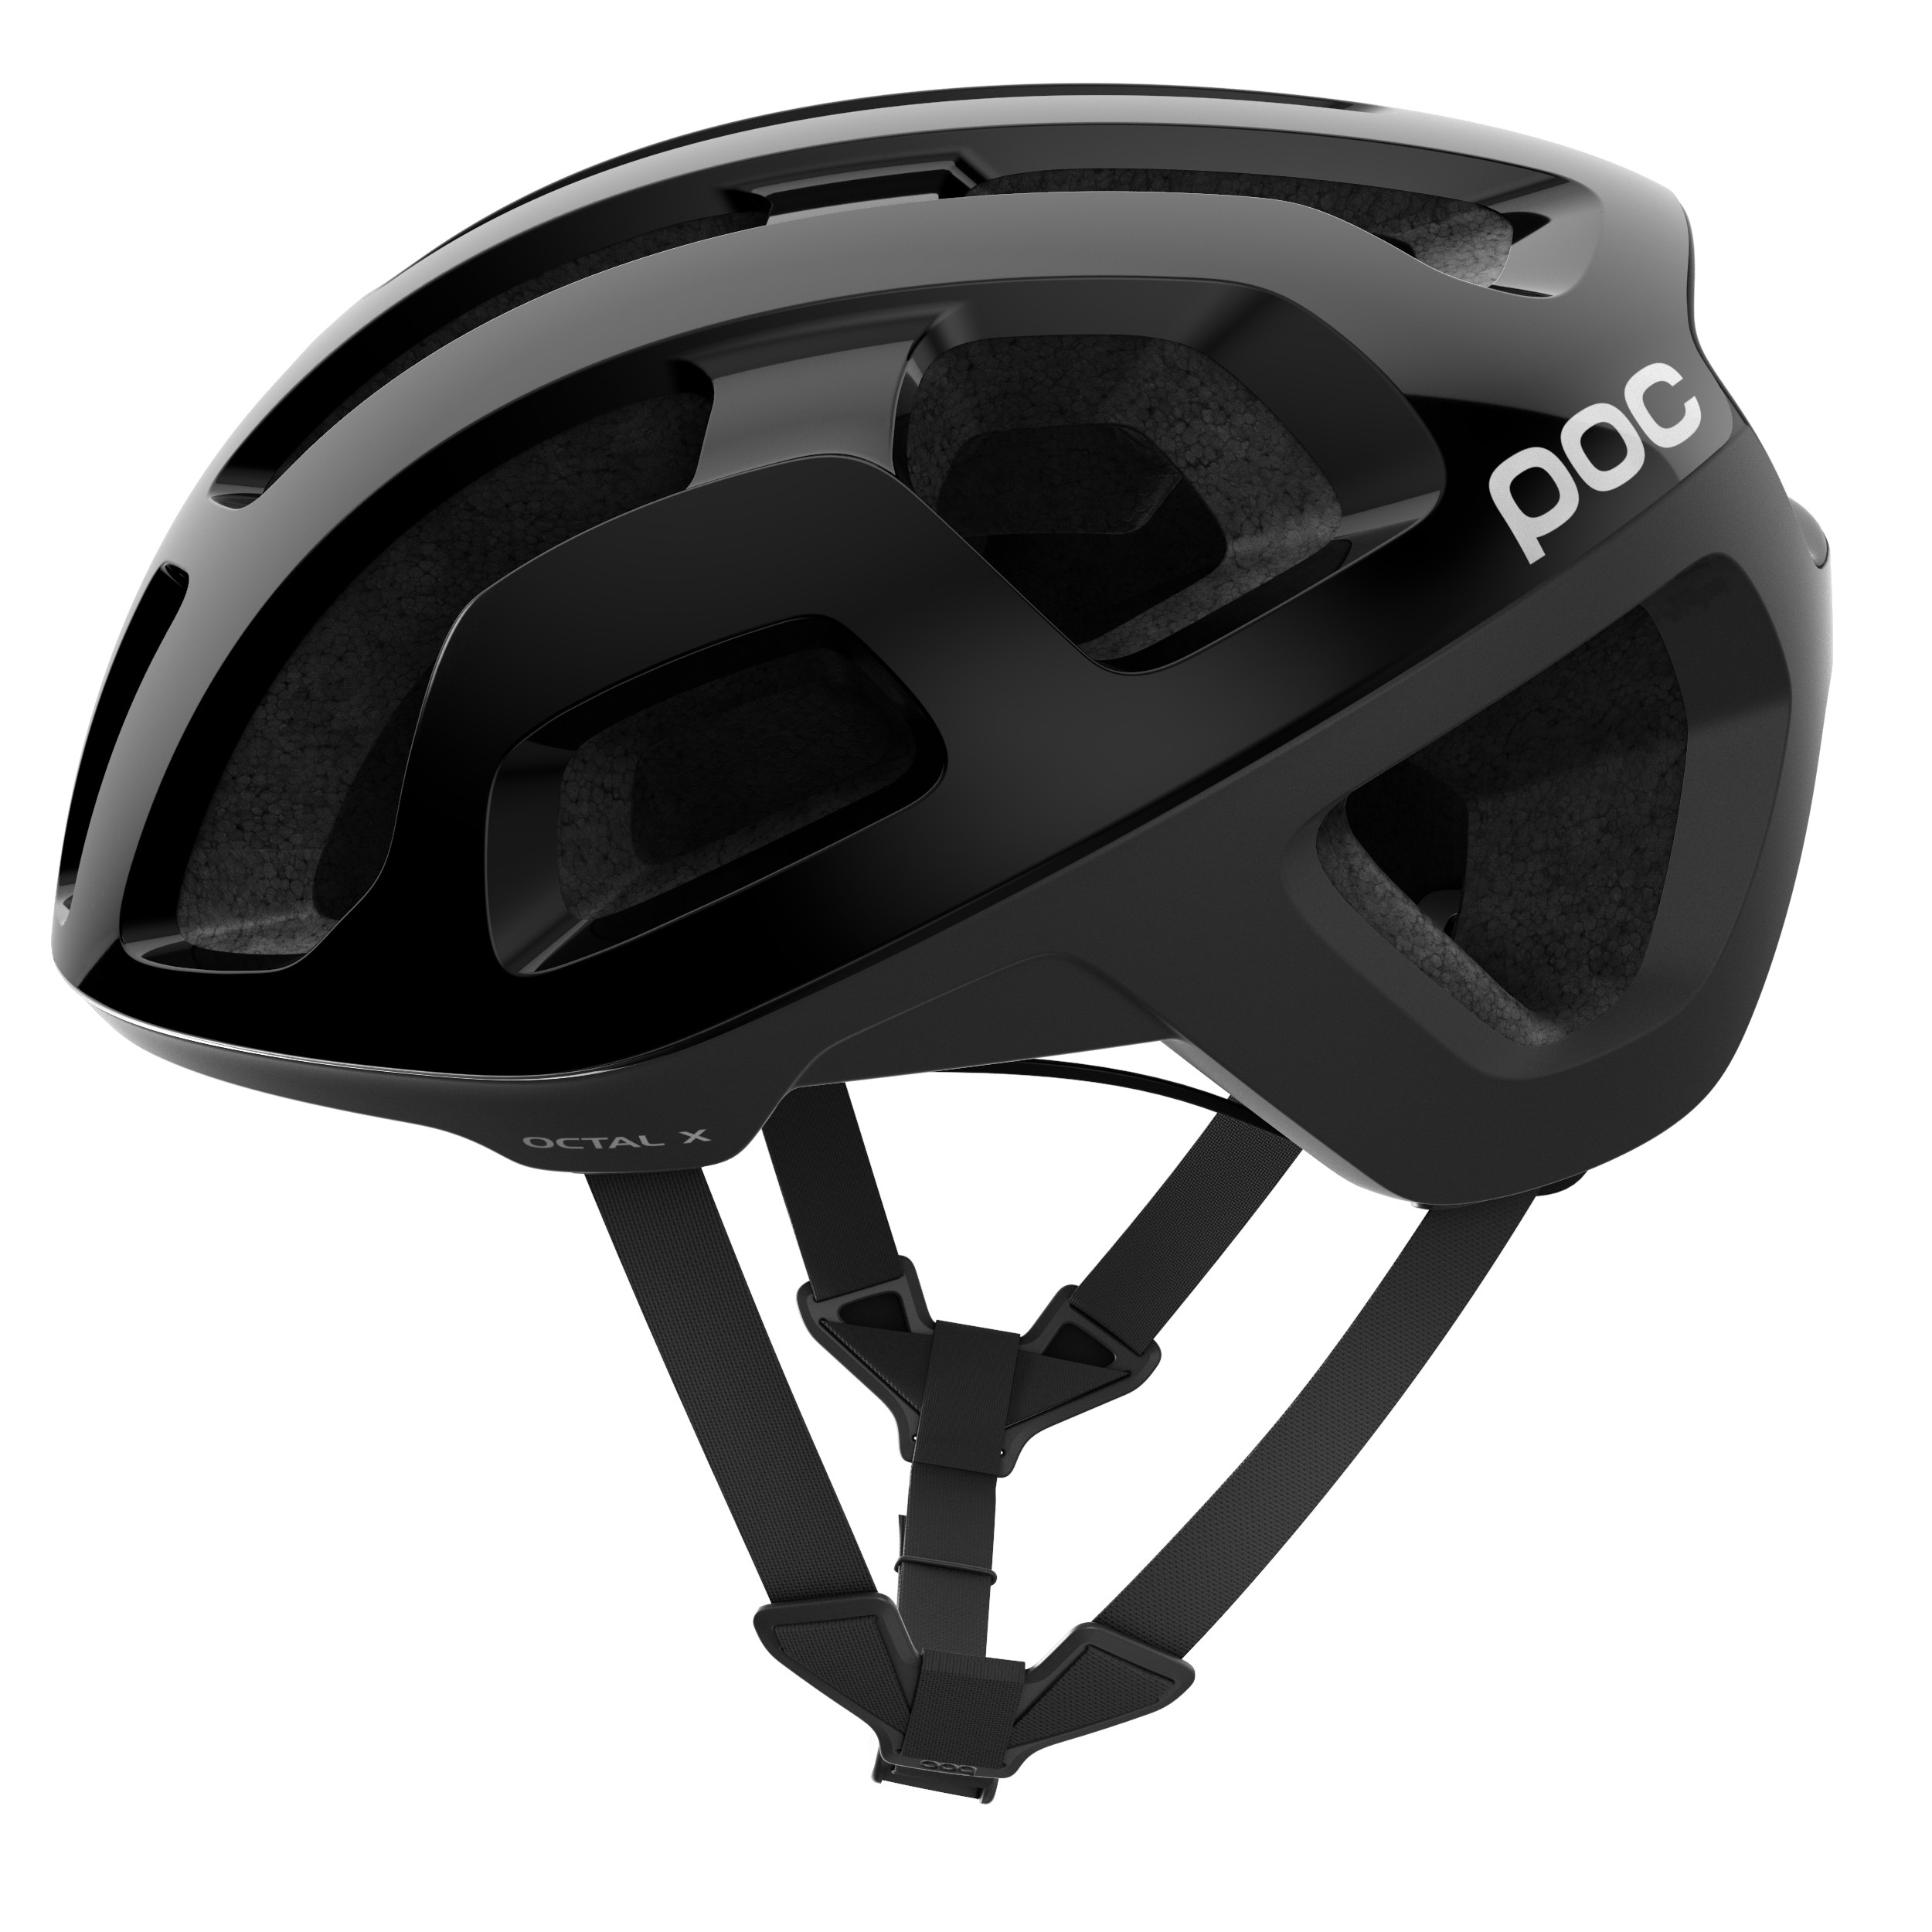 Poc octal x casque de vélo carbon noir